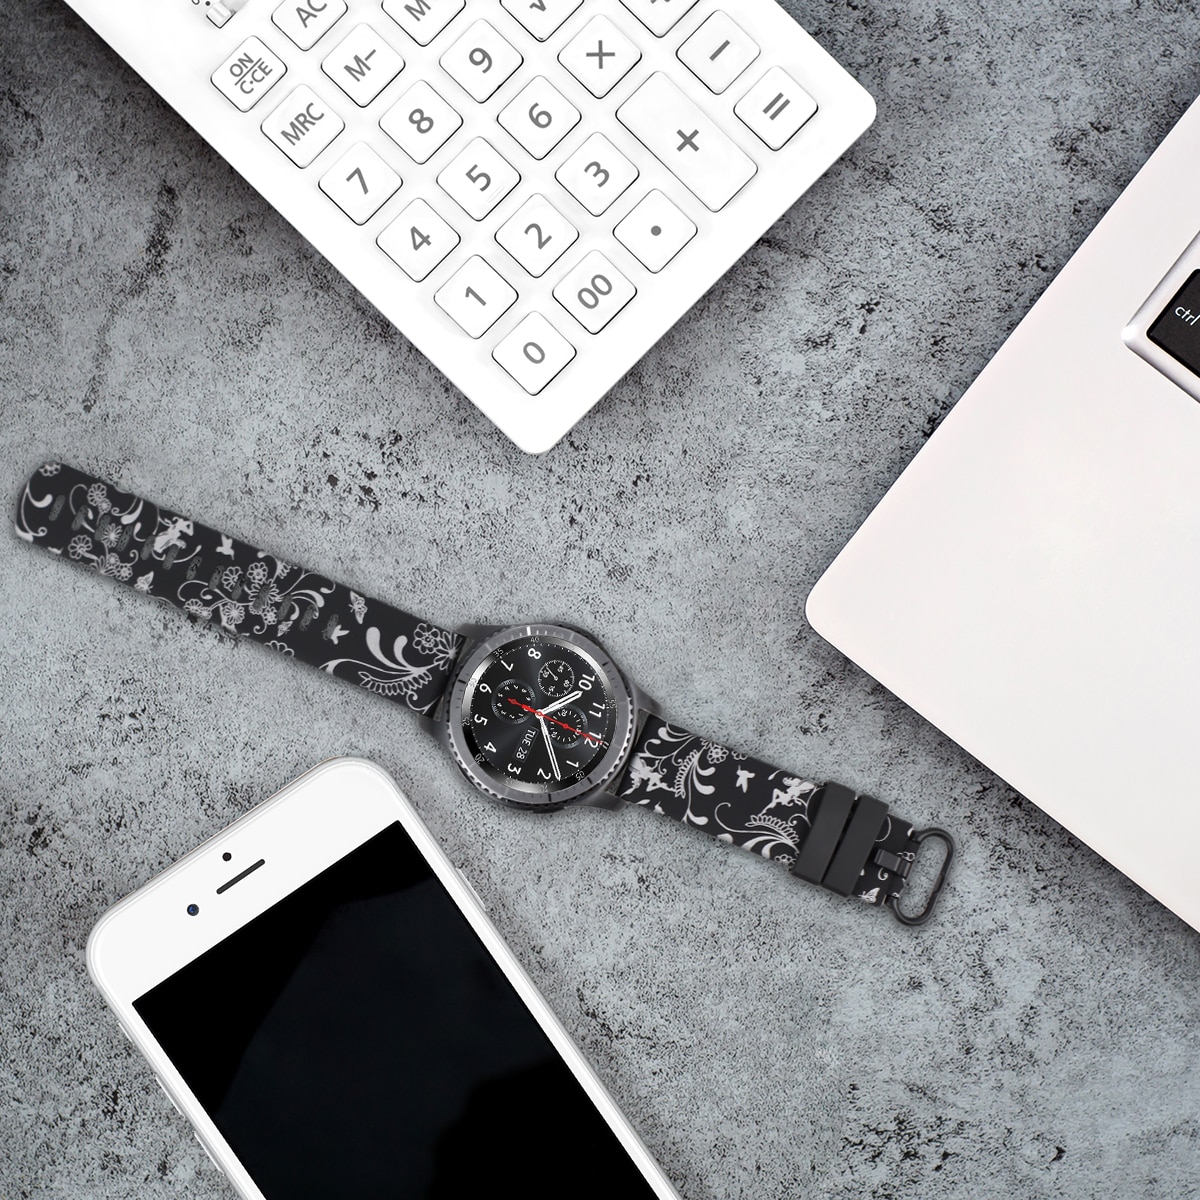 Druck Silikon Armband für Huawei Uhr GT 2 46 MM/GT2 Aktive 46m Smart Uhr Band 22MM handgelenk Strap für Samsung galaxy S3